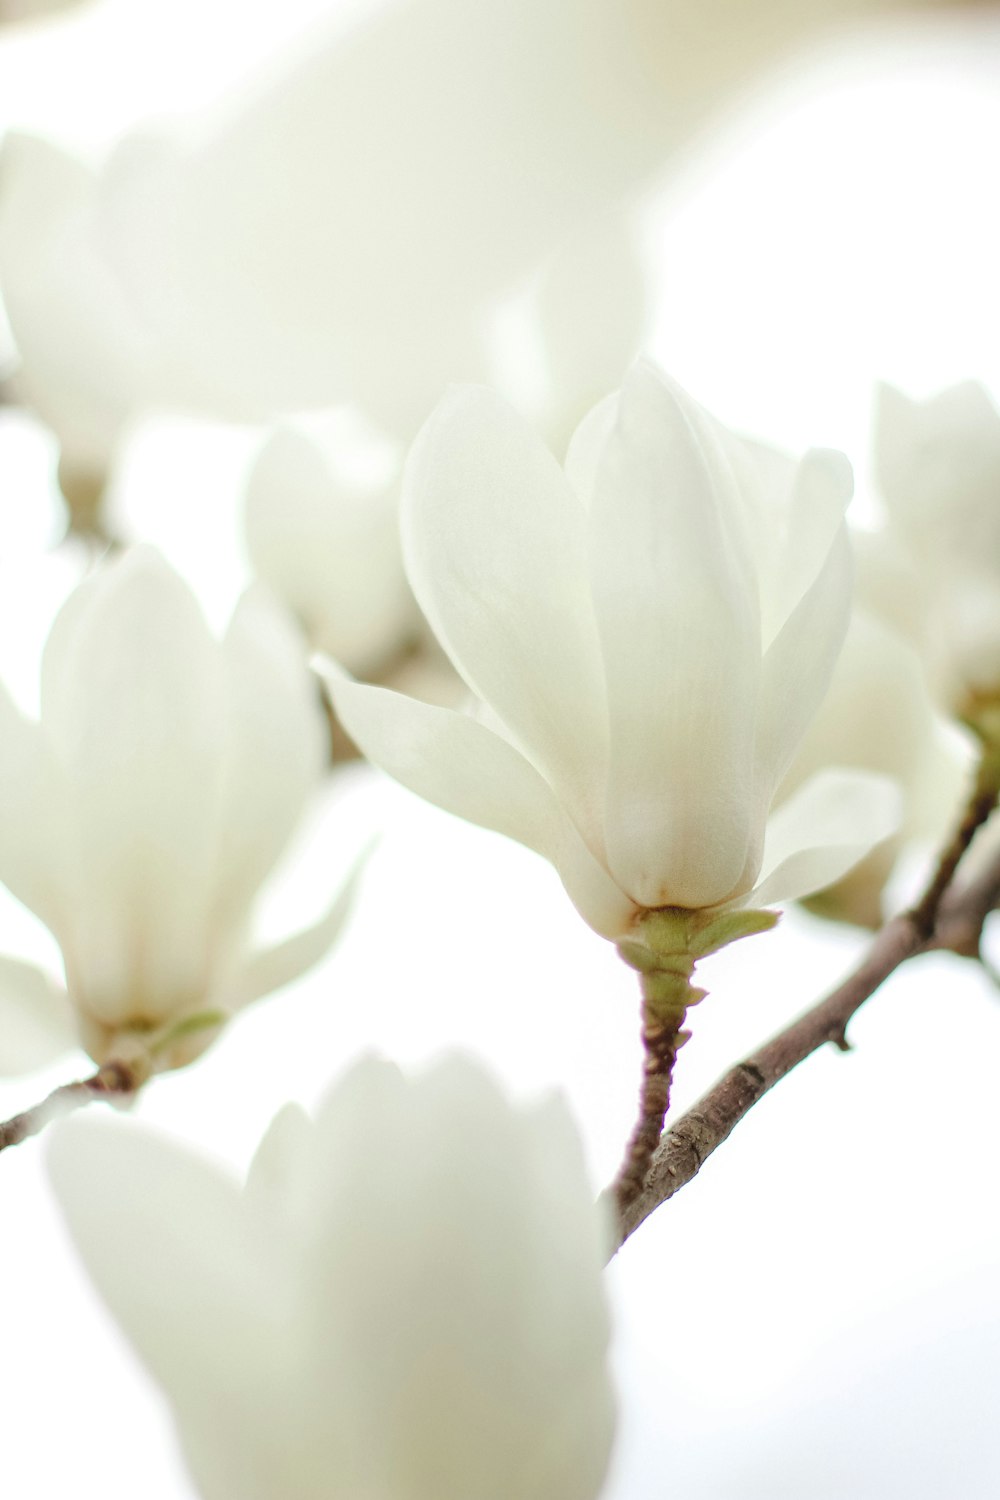 Un primer plano de una rama con flores blancas